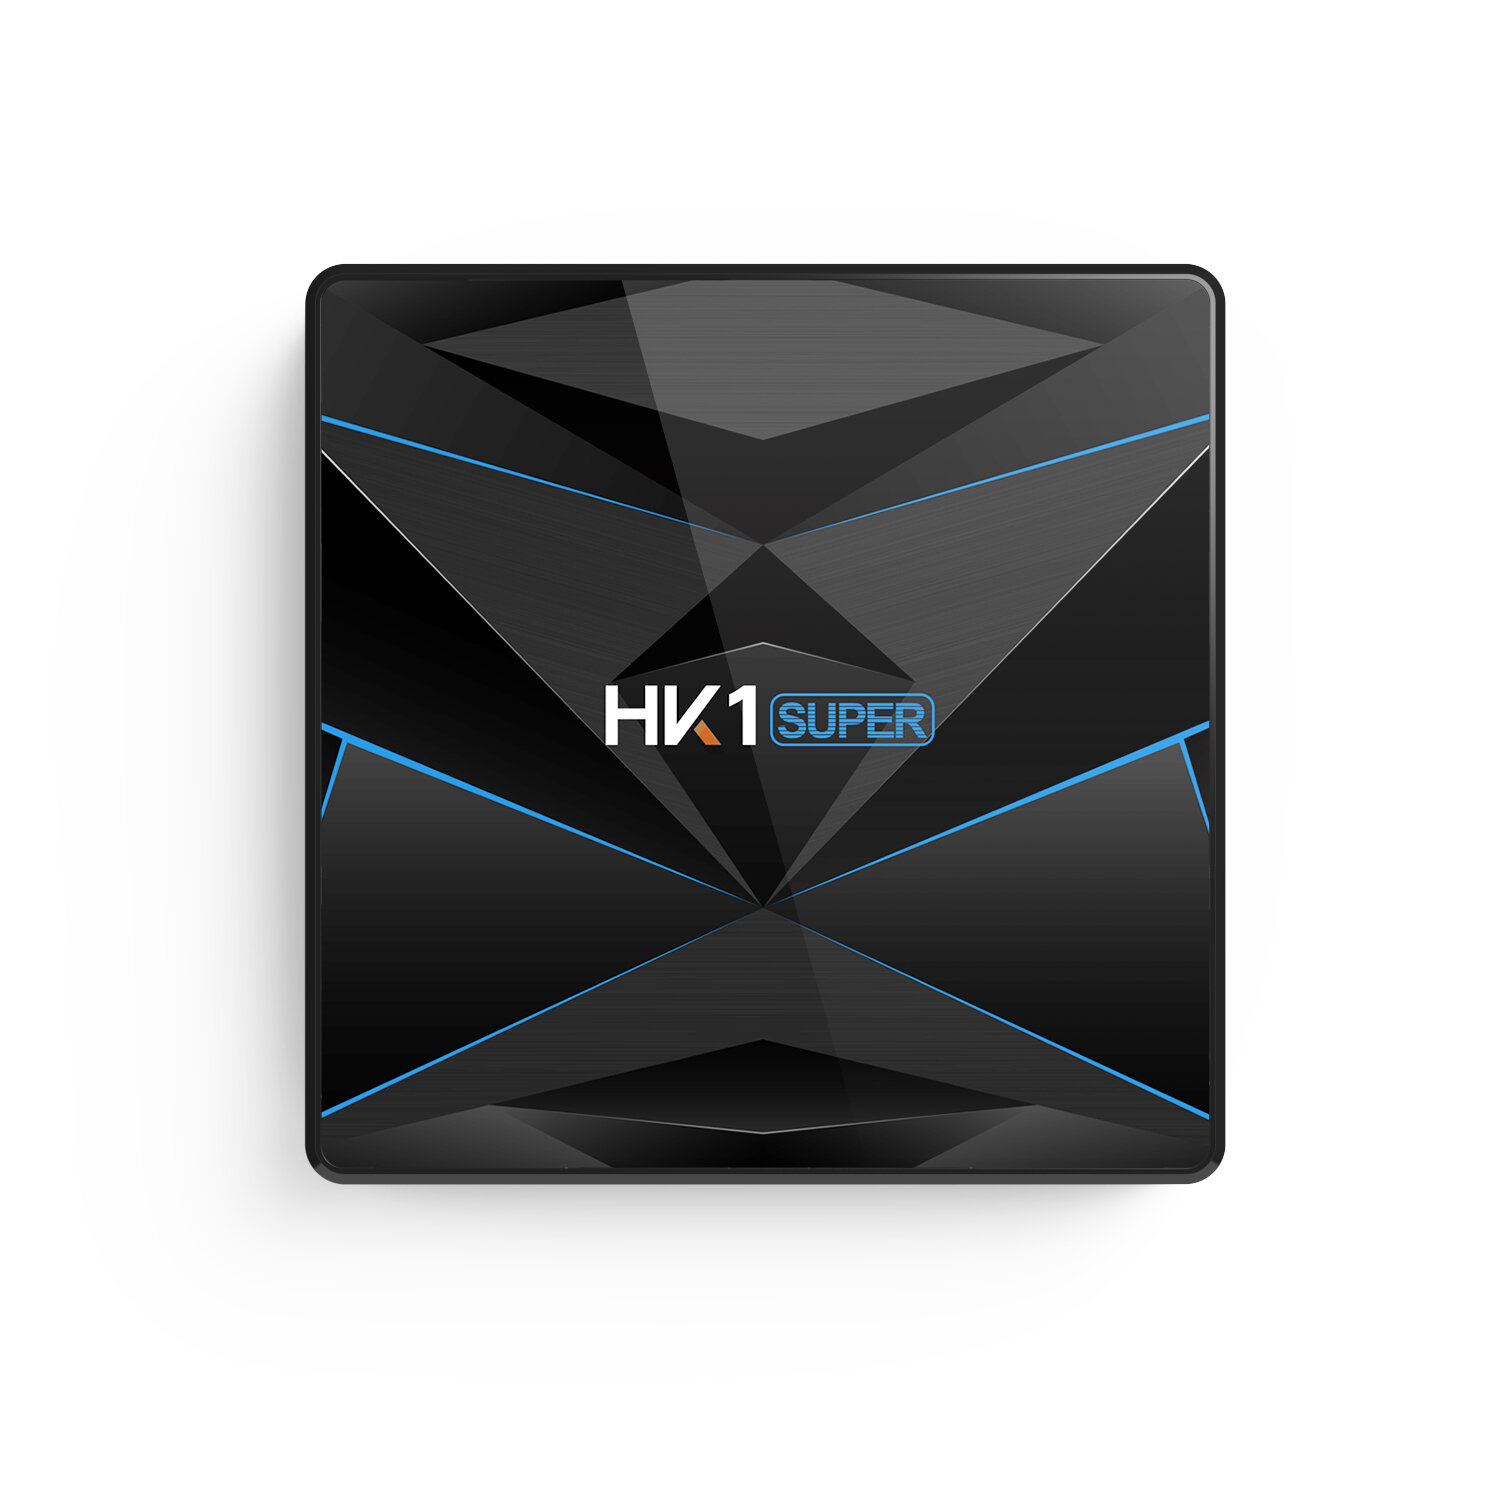 

HK1 Super RK3318 4GB RAM 64GB ROM 5G WIFI bluetooth 4.0 Android 9.0 4K TV Box